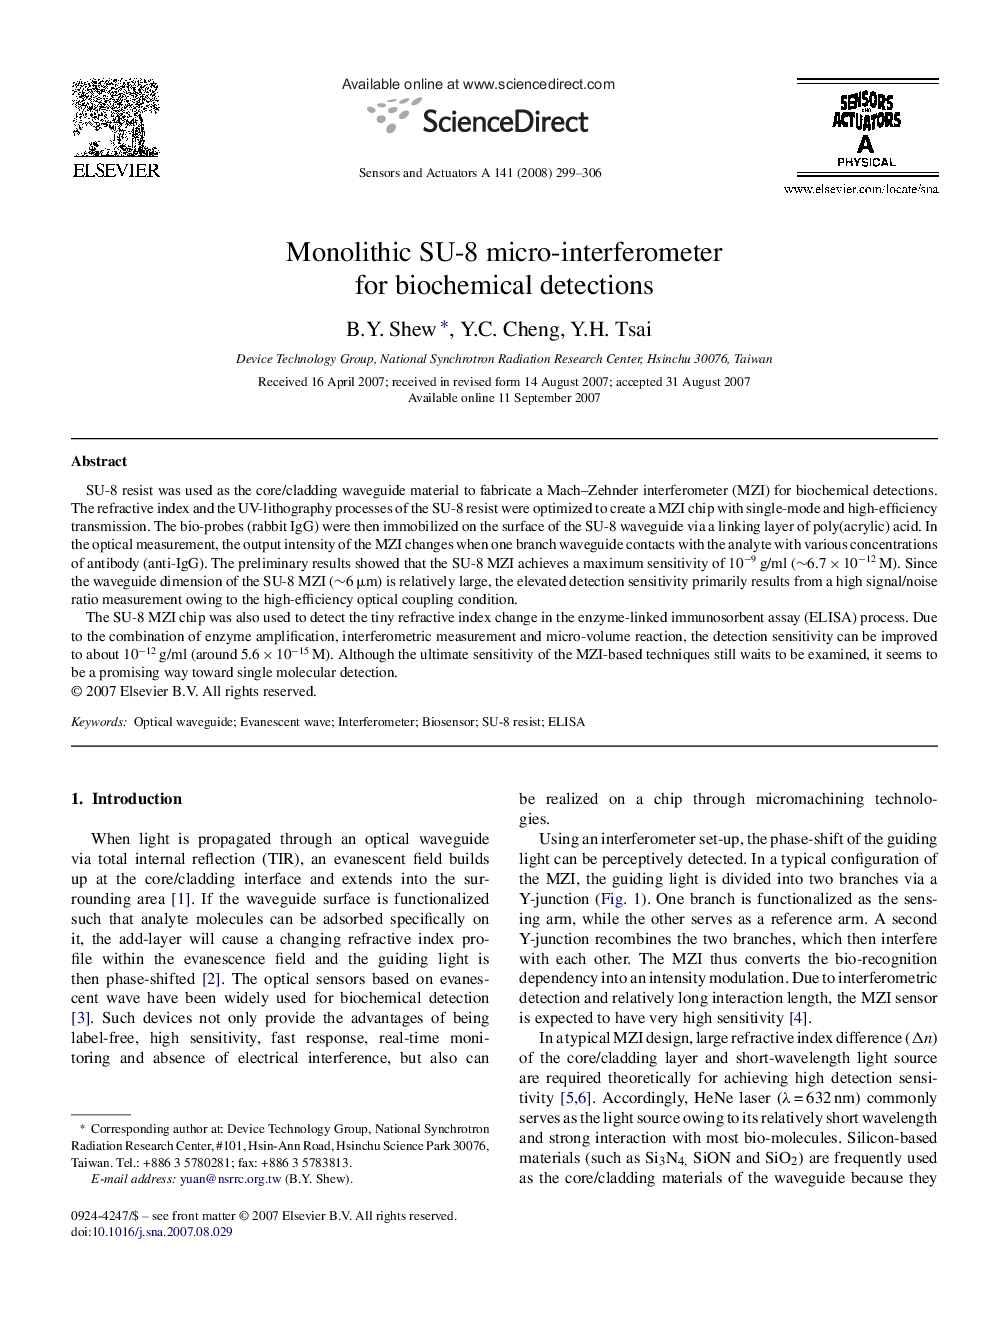 Monolithic SU-8 micro-interferometer for biochemical detections